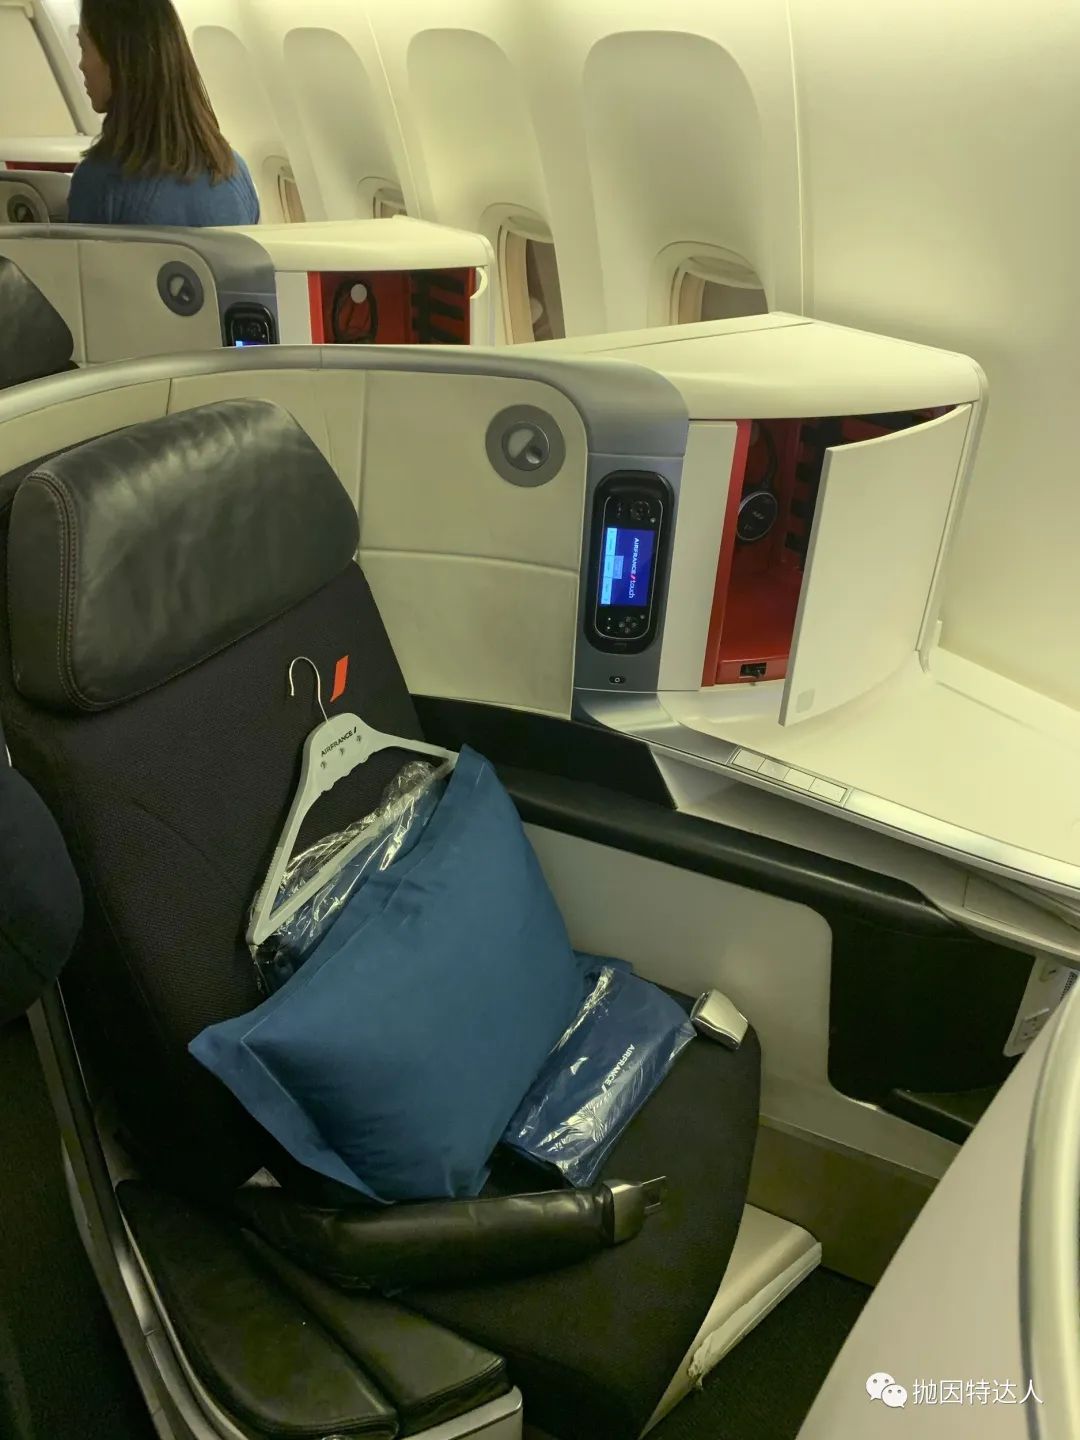 Air France presenta su nueva cabina de primera clase | Fly News